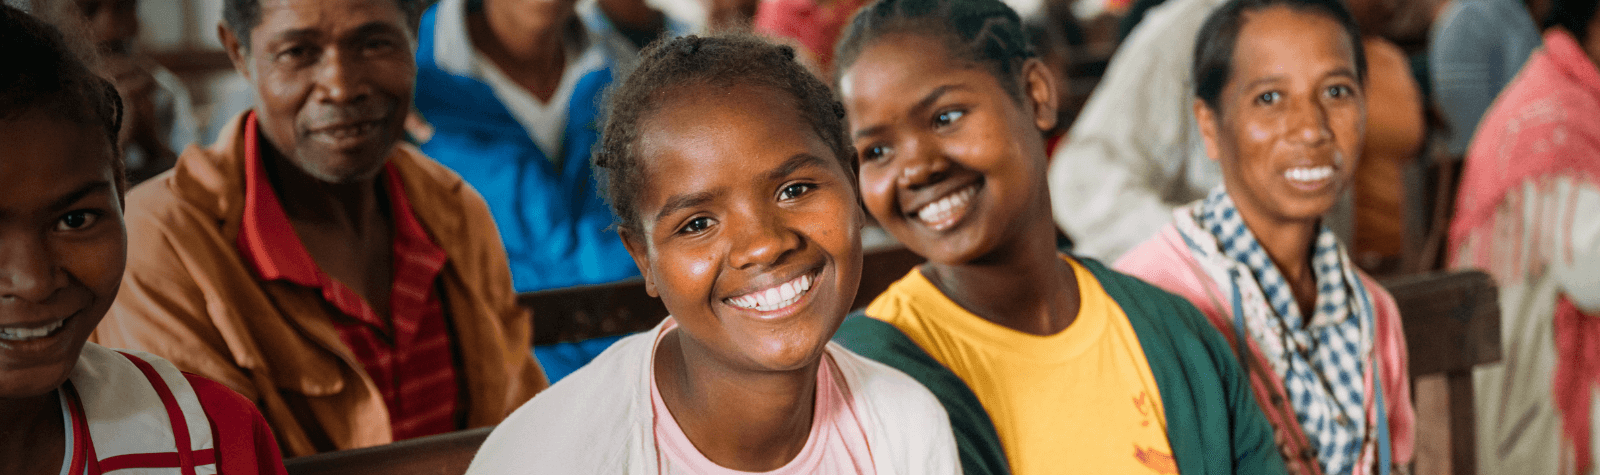 De impact van de Bijbel in een dorp in Madagaskar